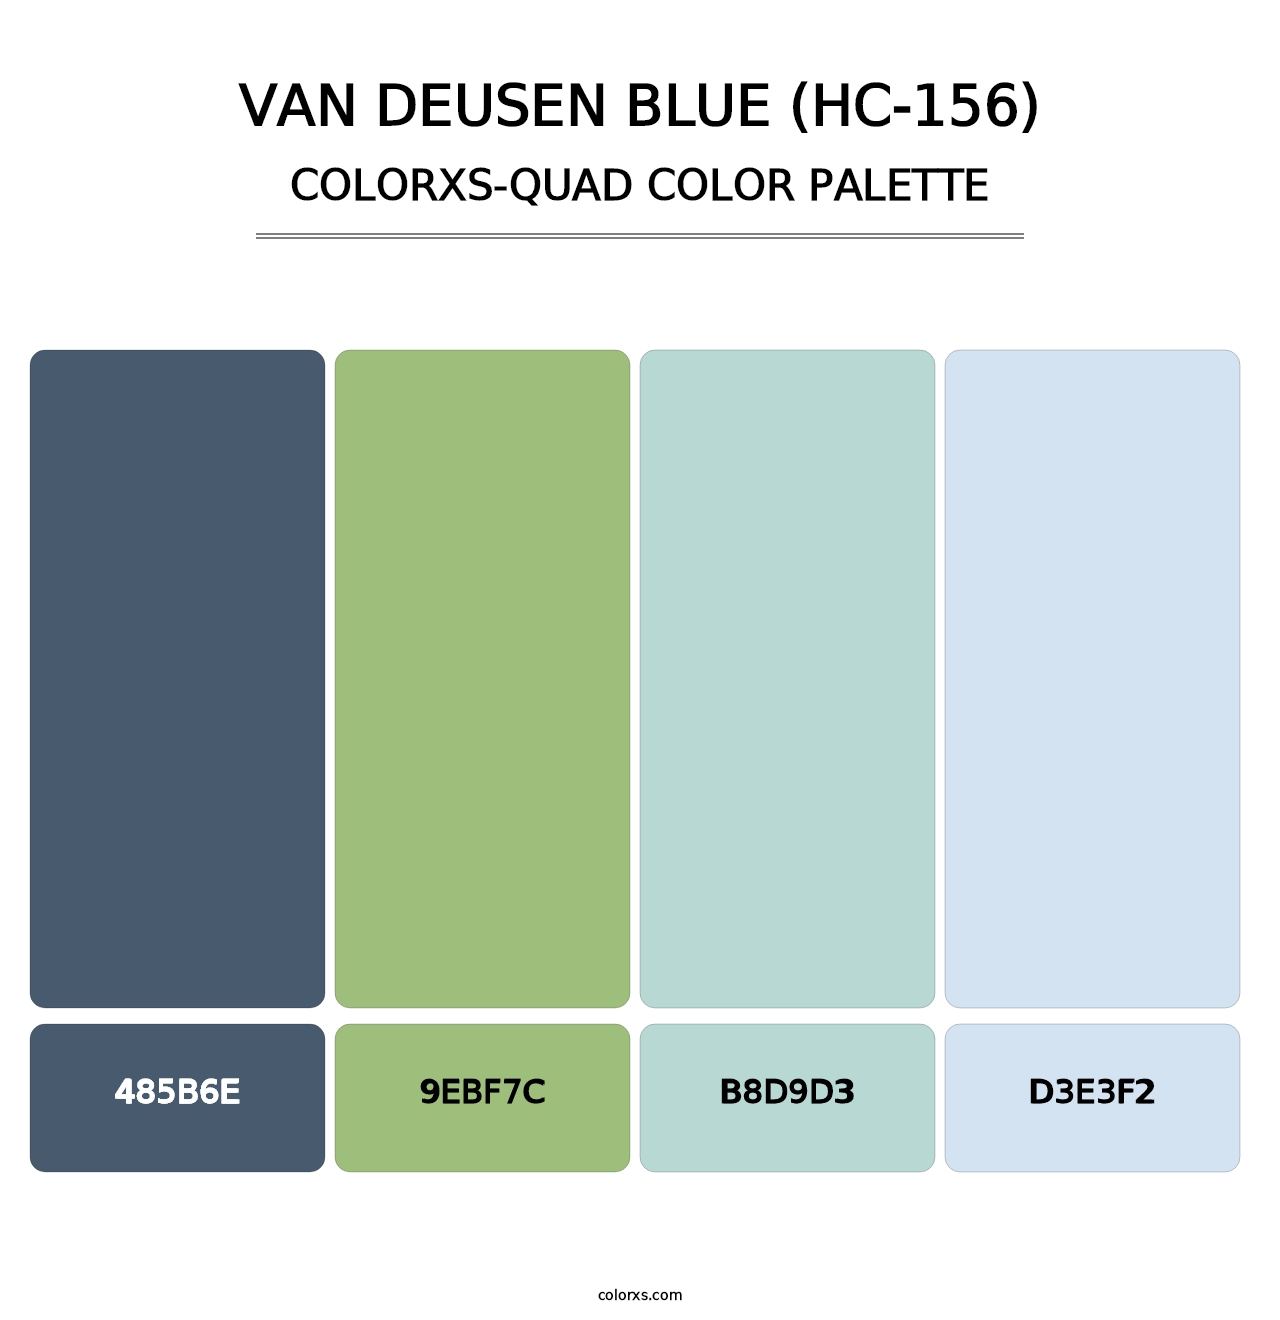 Van Deusen Blue (HC-156) - Colorxs Quad Palette